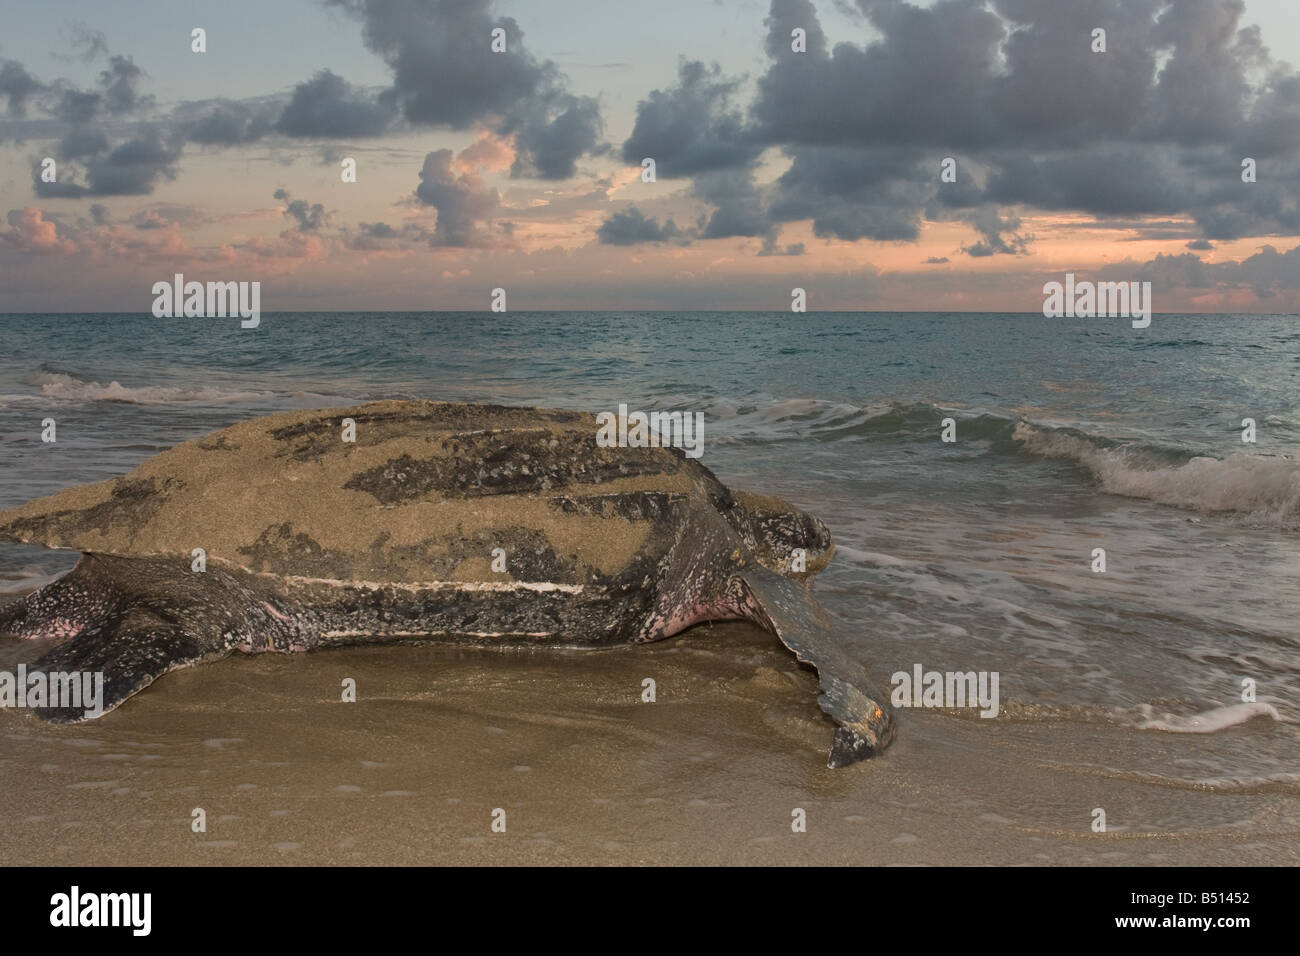 Un adulte tortue luth niche le long d'une plage de Floride et rampe vers l'océan Atlantique Banque D'Images